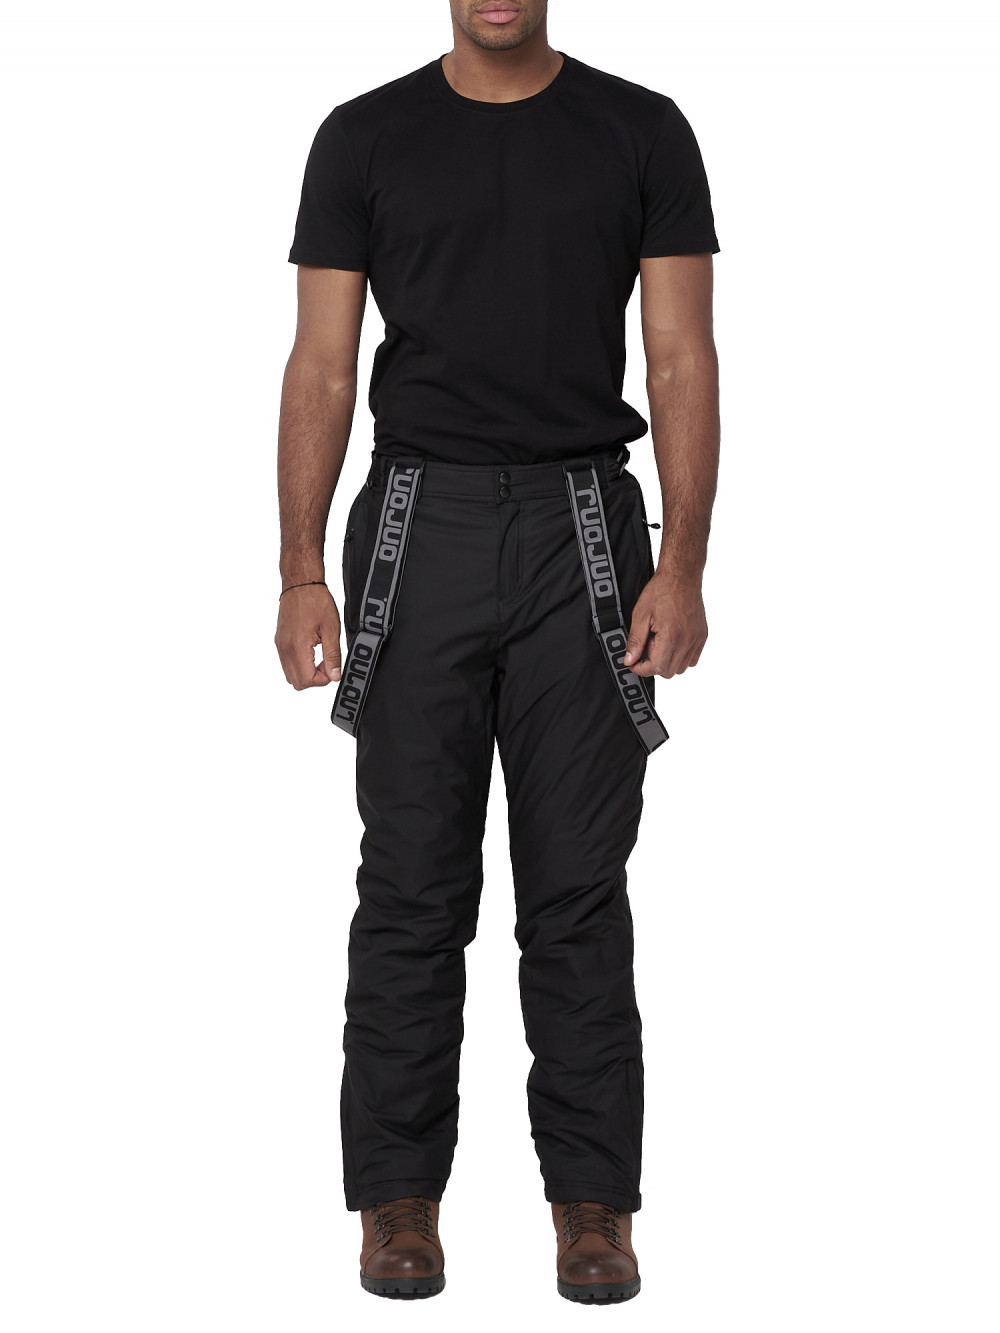 Полукомбинезон брюки горнолыжные мужские AD662123Ch черного цвета, 50